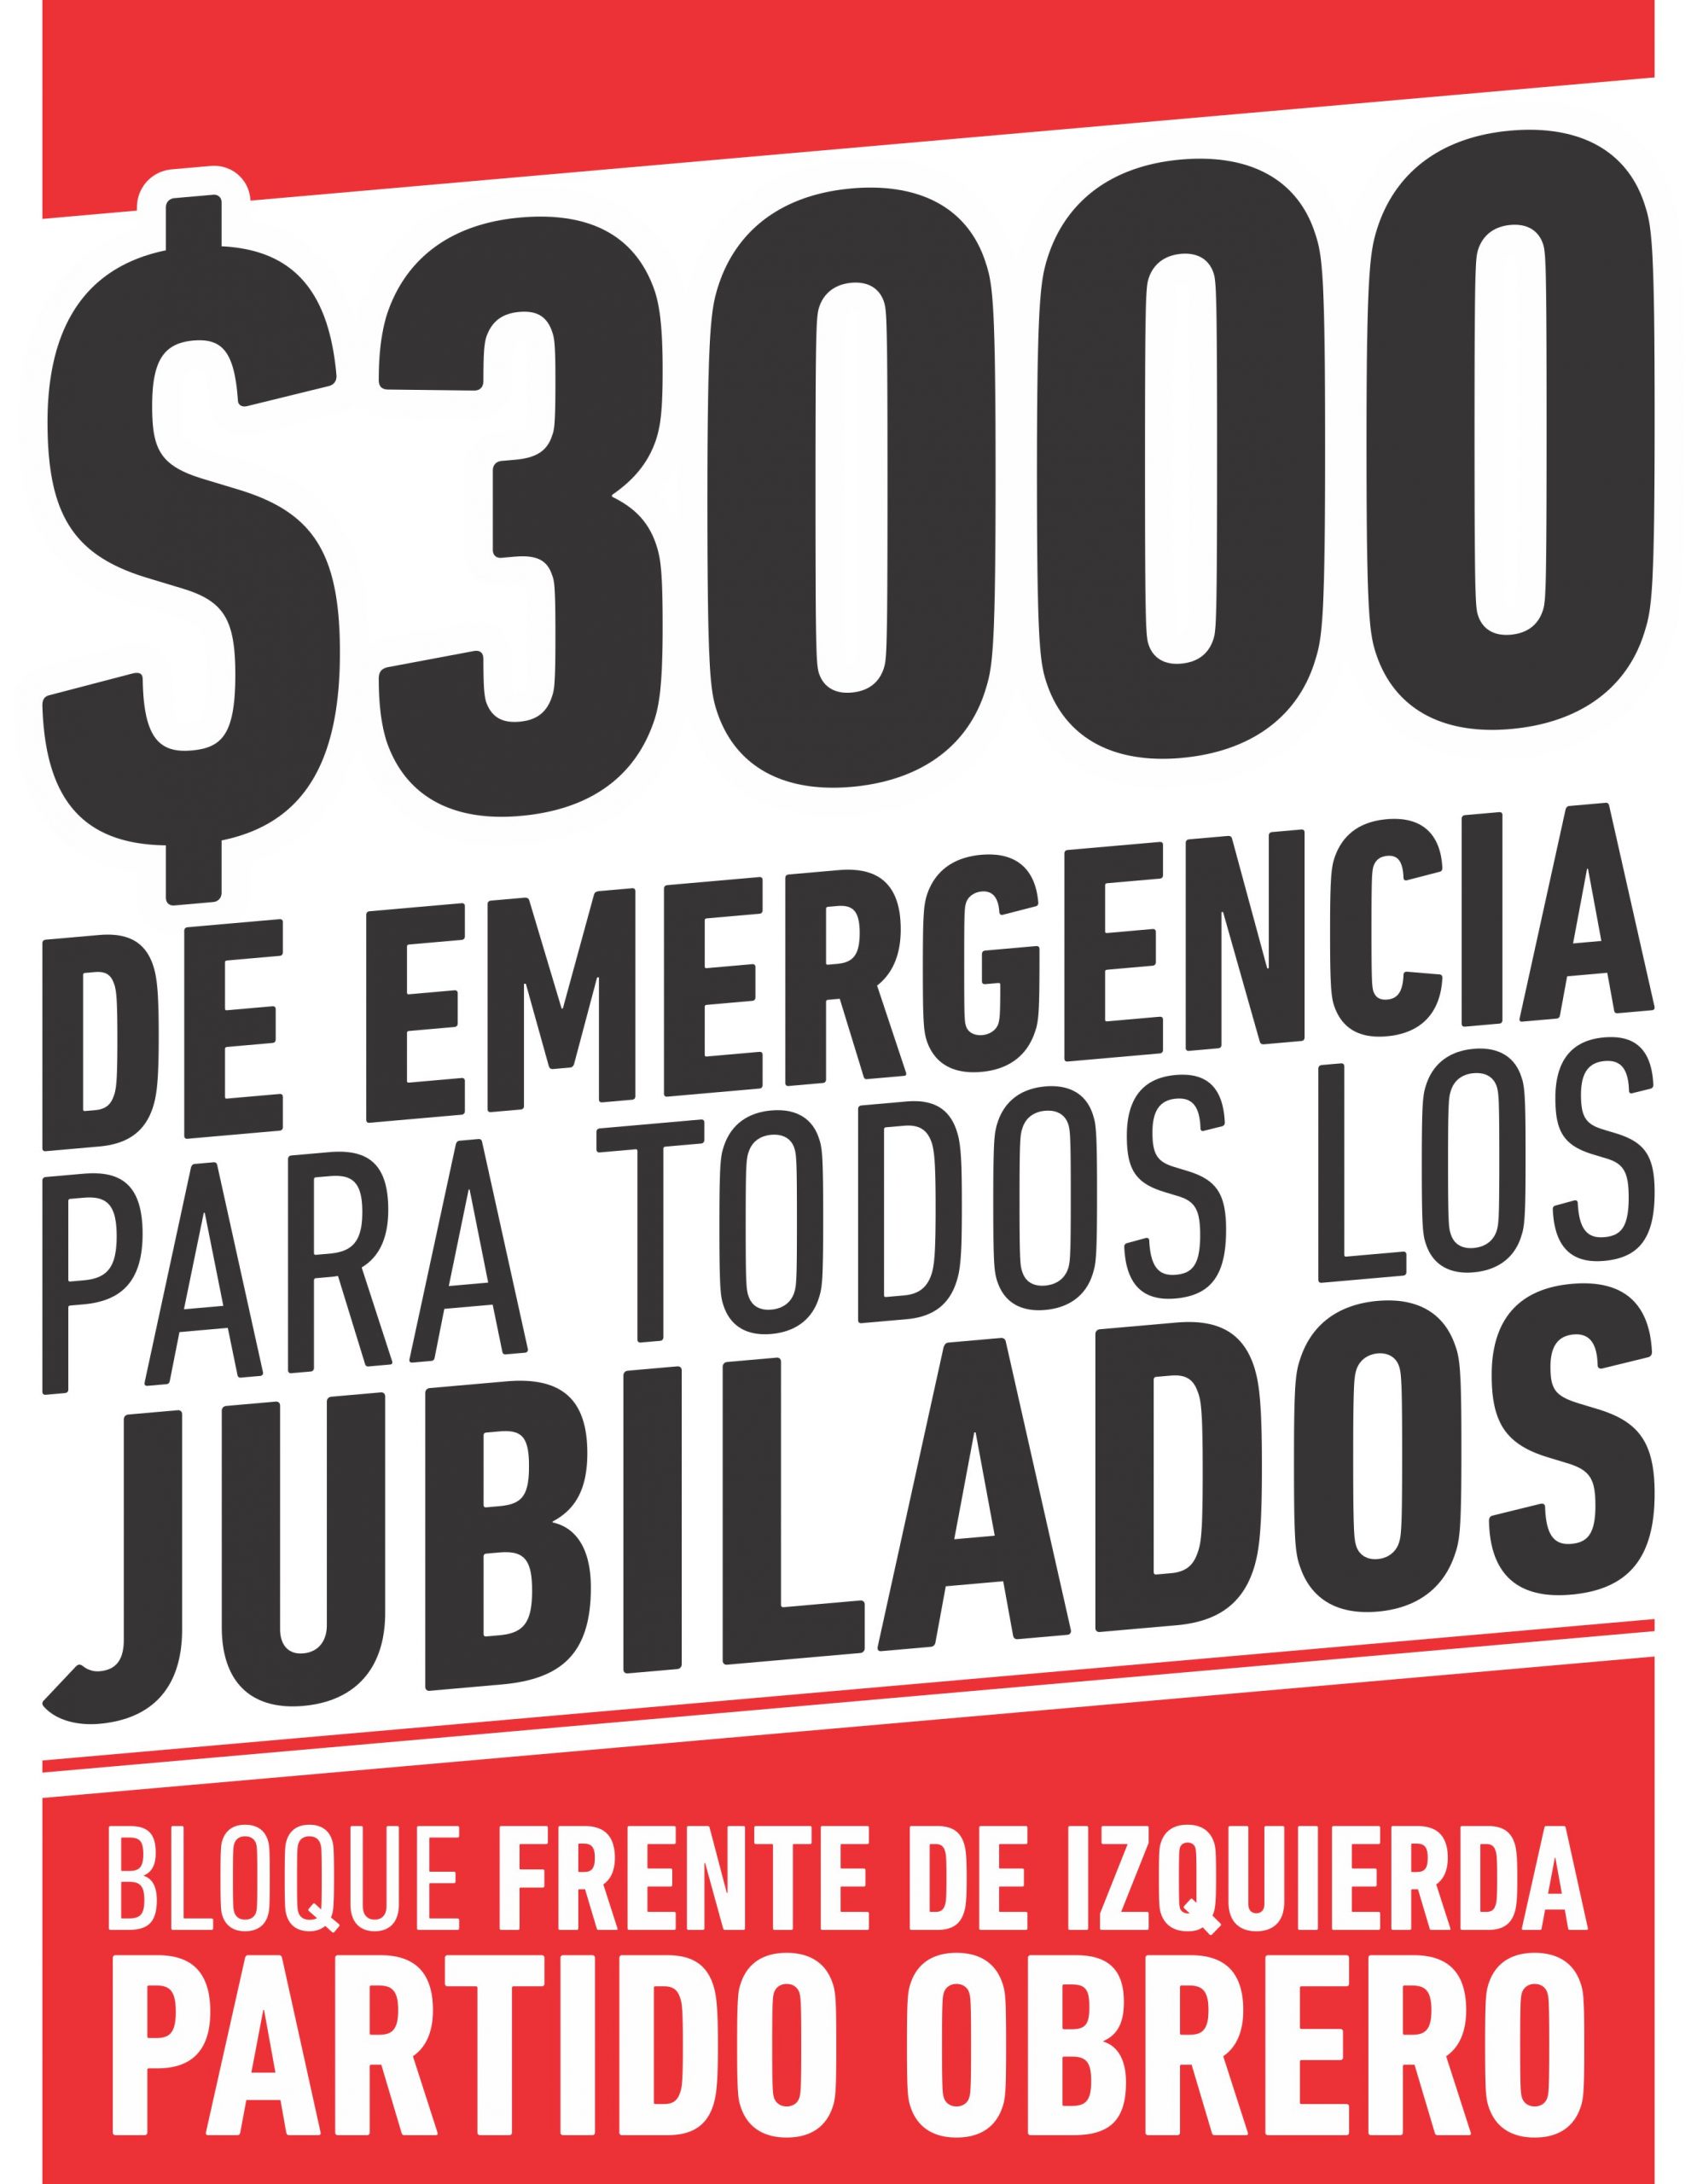 3.000 de emergencia para todos los jubilados